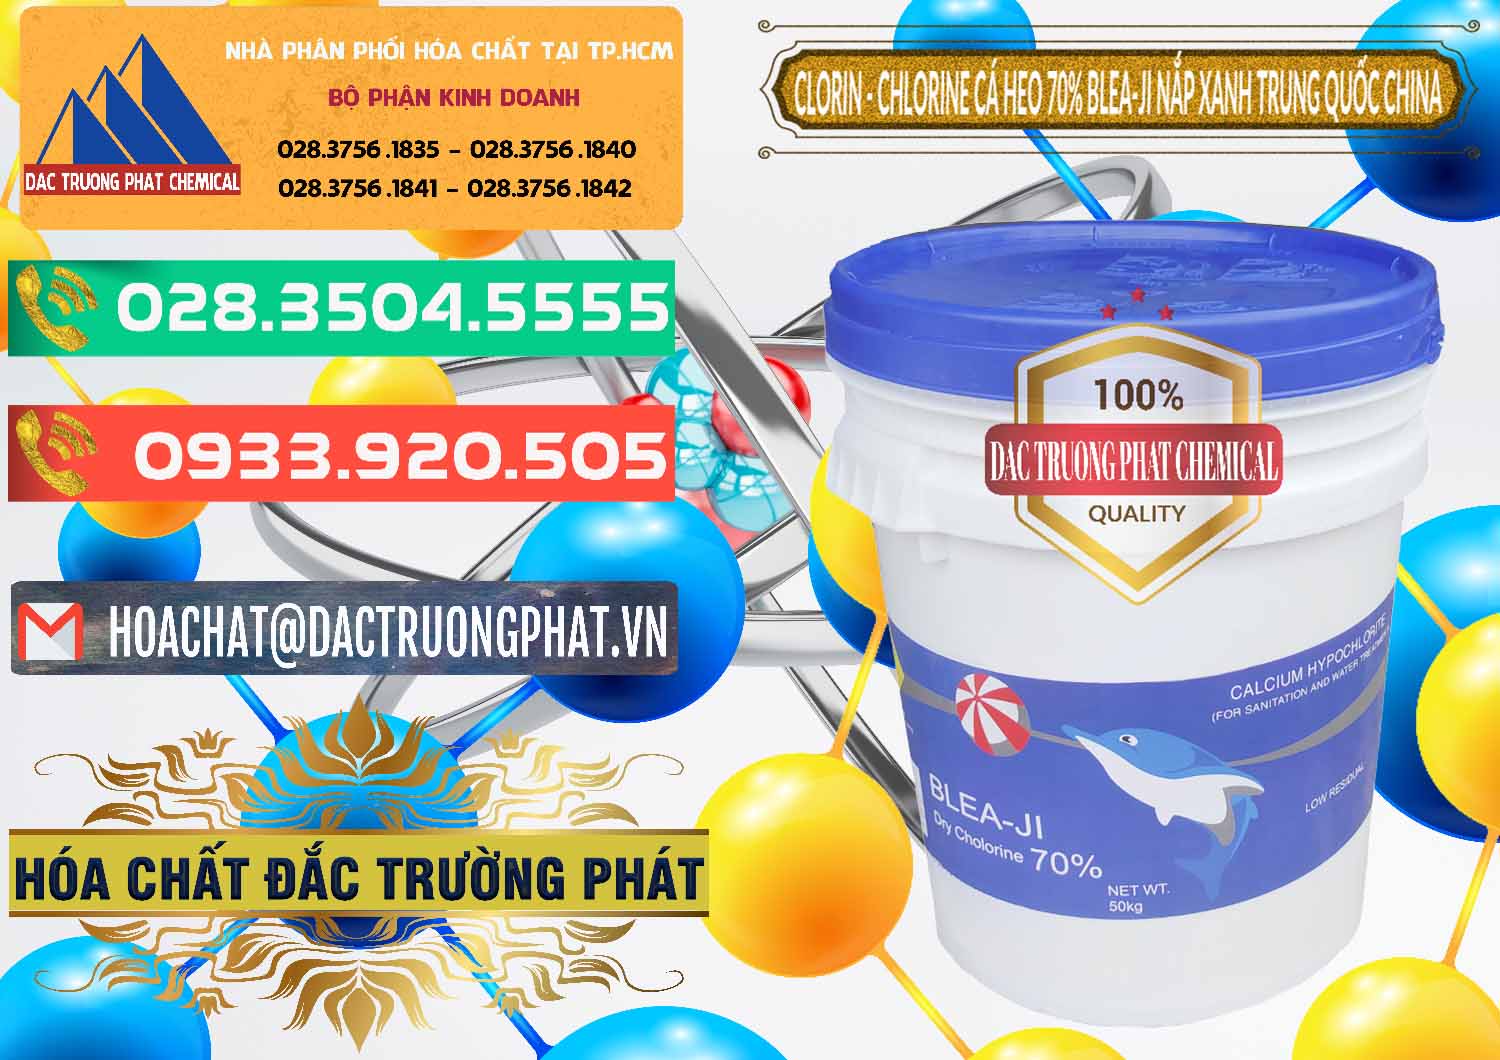 Đơn vị chuyên kinh doanh ( bán ) Clorin - Chlorine Cá Heo 70% Cá Heo Blea-Ji Thùng Tròn Nắp Xanh Trung Quốc China - 0208 - Đơn vị nhập khẩu ( phân phối ) hóa chất tại TP.HCM - congtyhoachat.com.vn